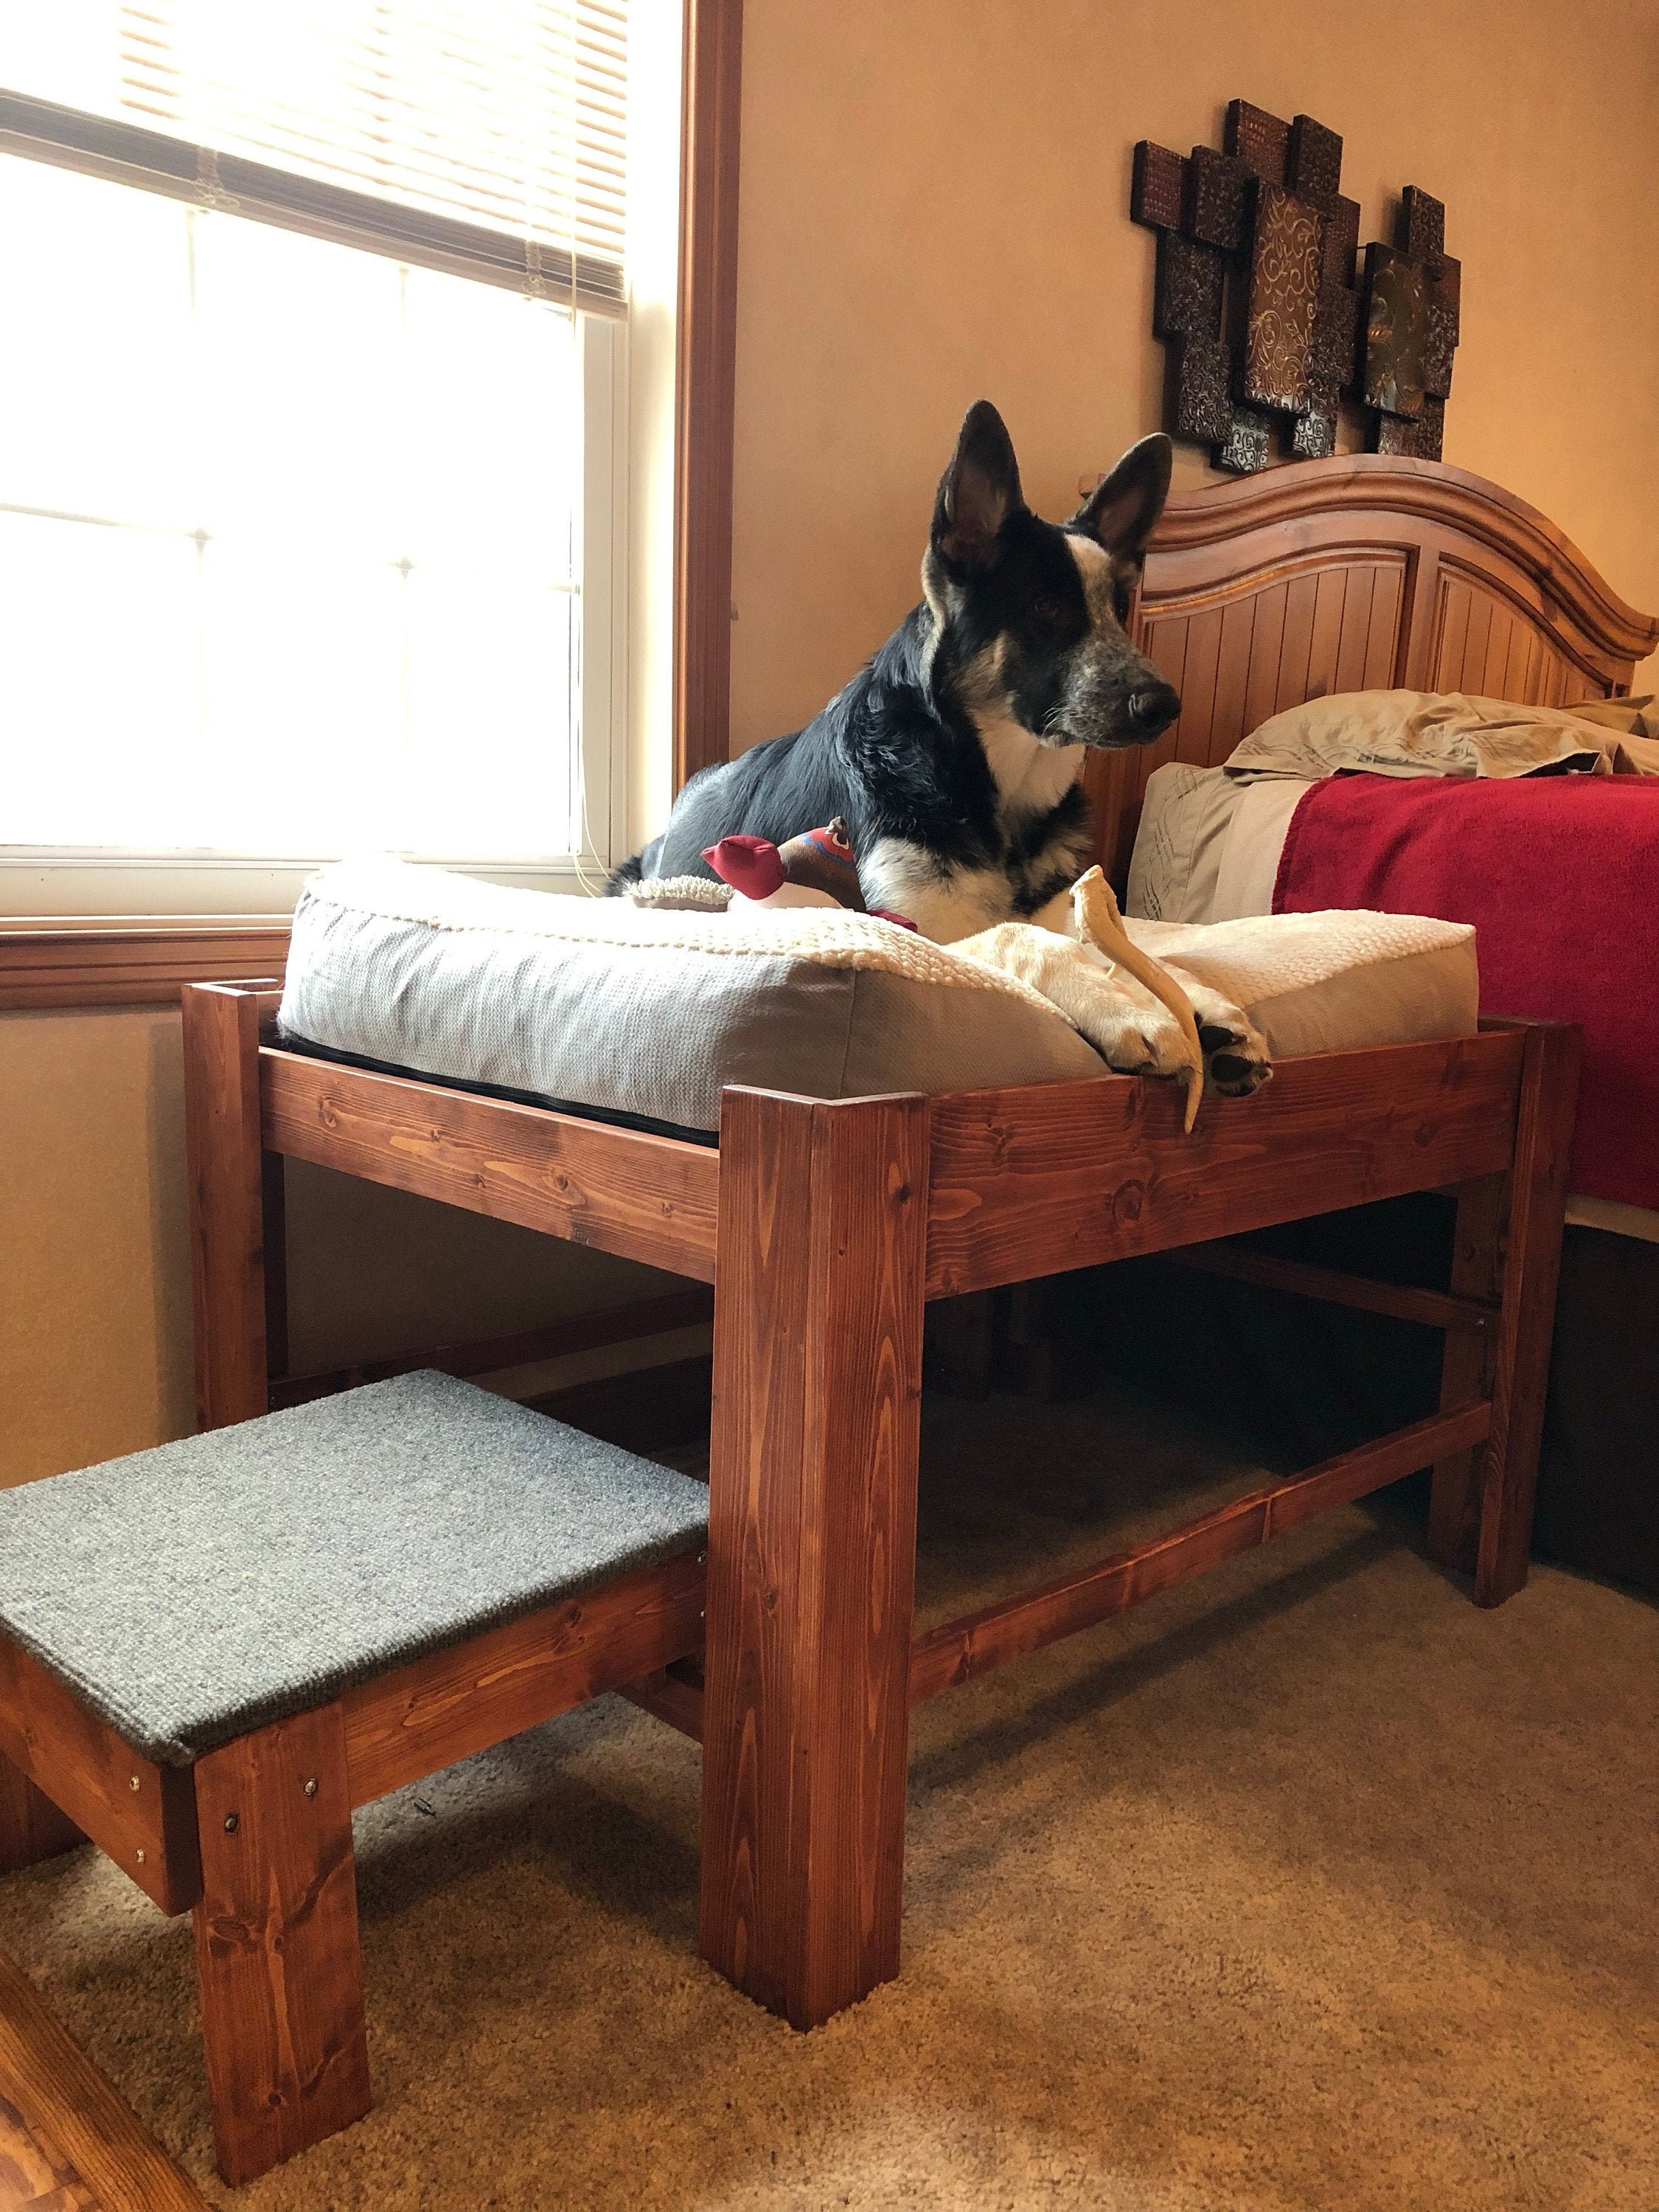 Qué Patas Pet Shop - Rampa de madera para mascotas. 🐶😍 ✓ Nuestras rampas  ayudan a su mascota a subir a camas, sofás y mucho más mientras les ayudan  a mantenerse seguros